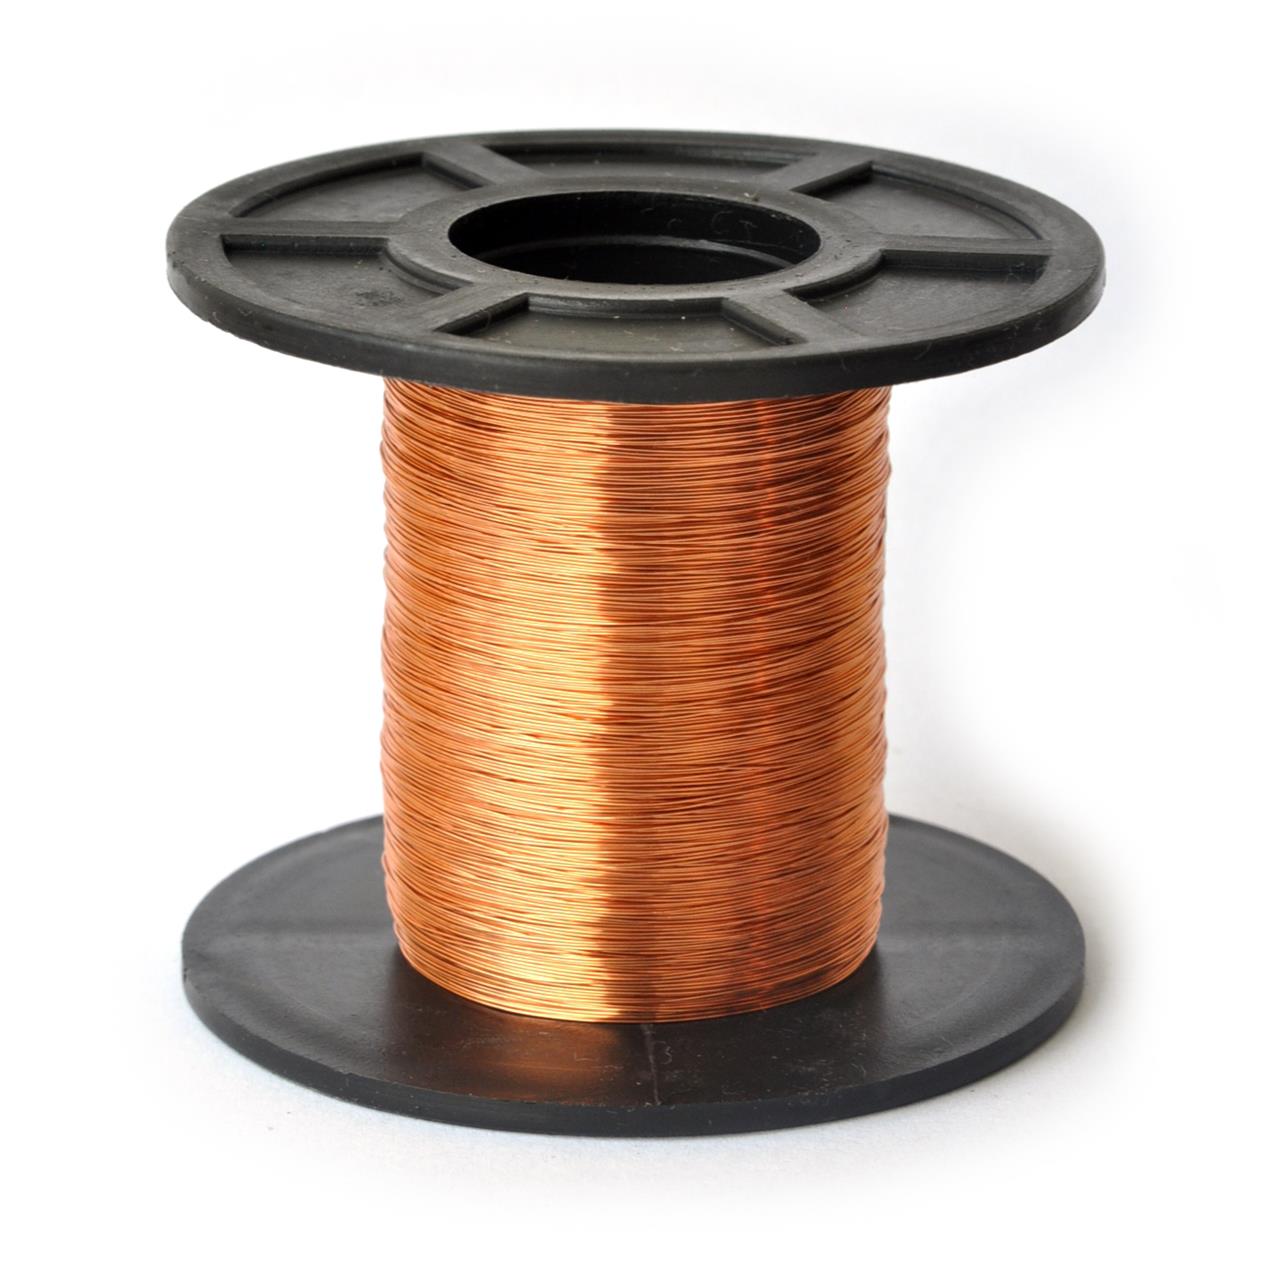 Fios de cobre esmaltados para bobinas, transformadores e indutores - Fio 31 AWG 100g